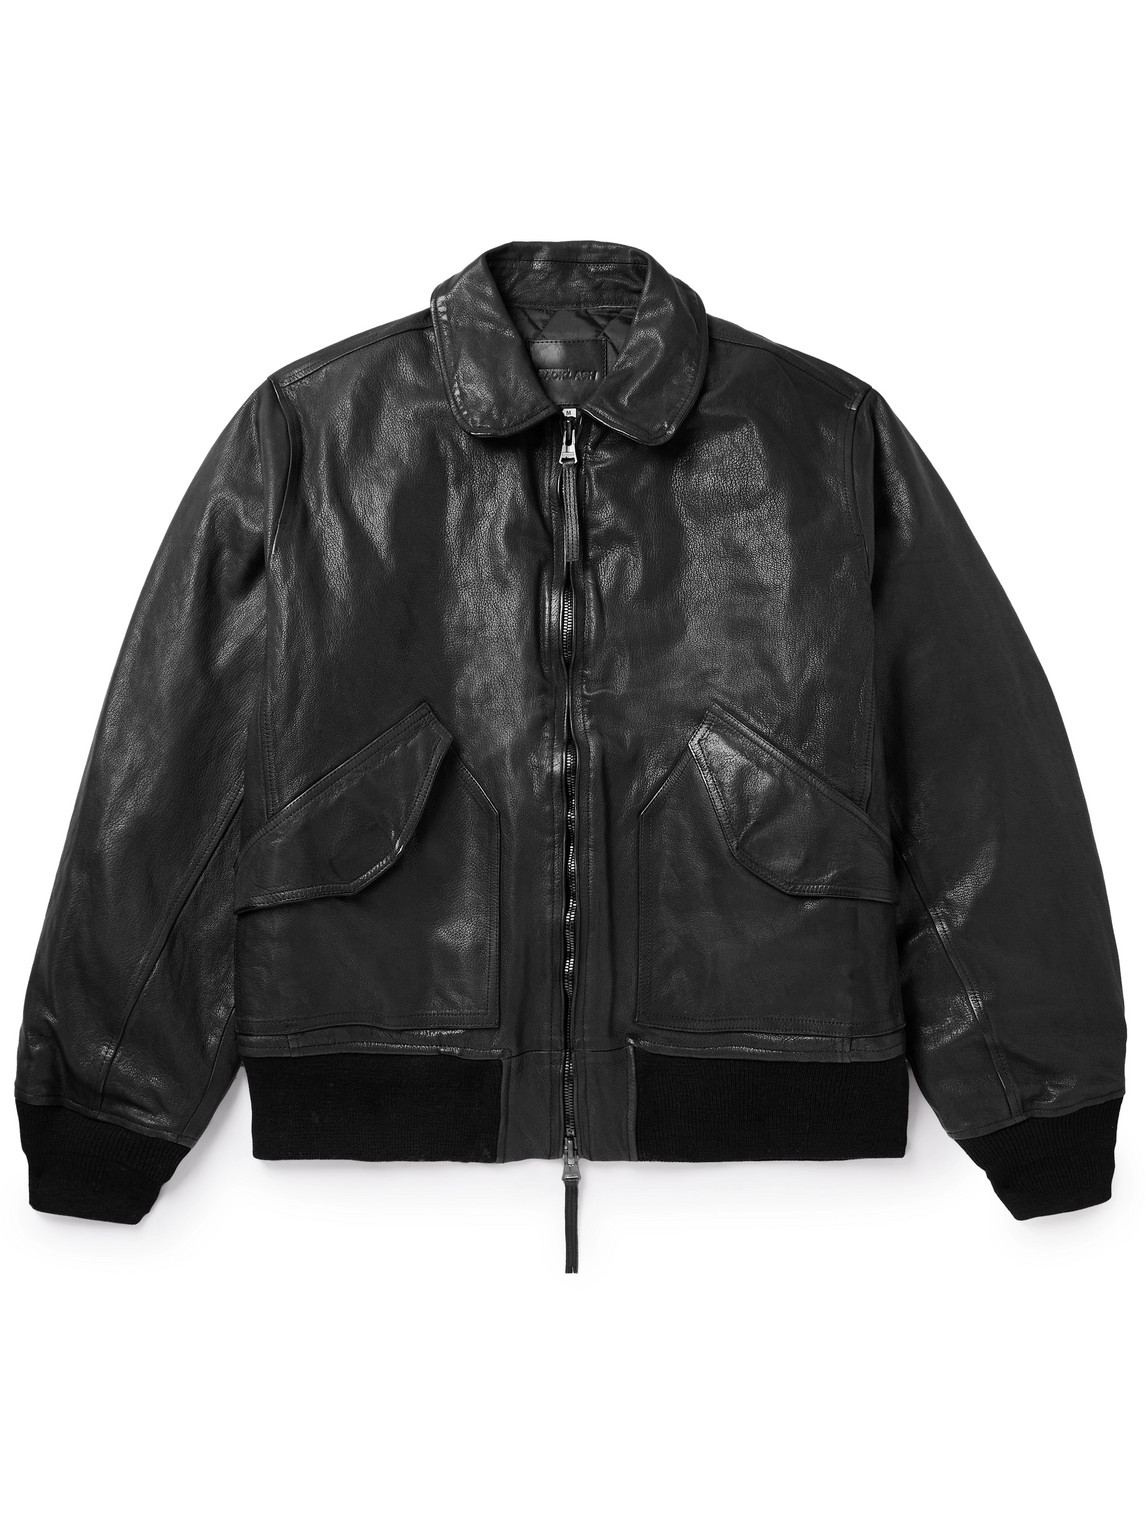 Monitaly Backlash Padded Leather Bomber Jacket In Black